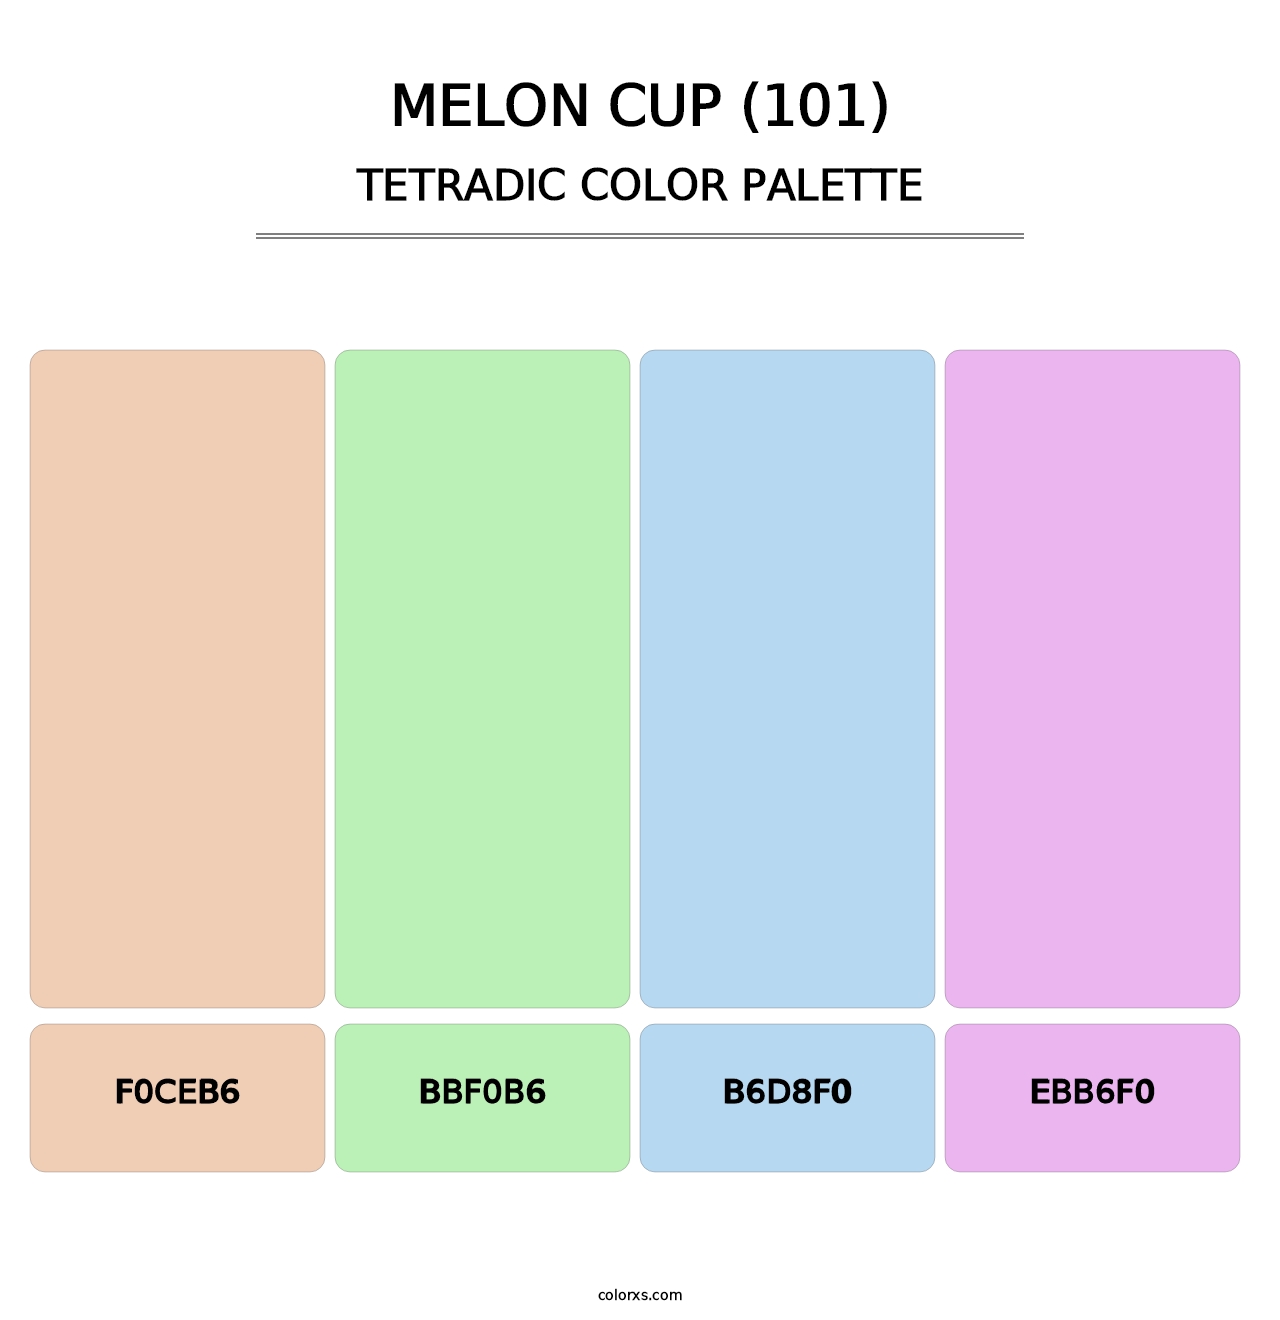 Melon Cup (101) - Tetradic Color Palette